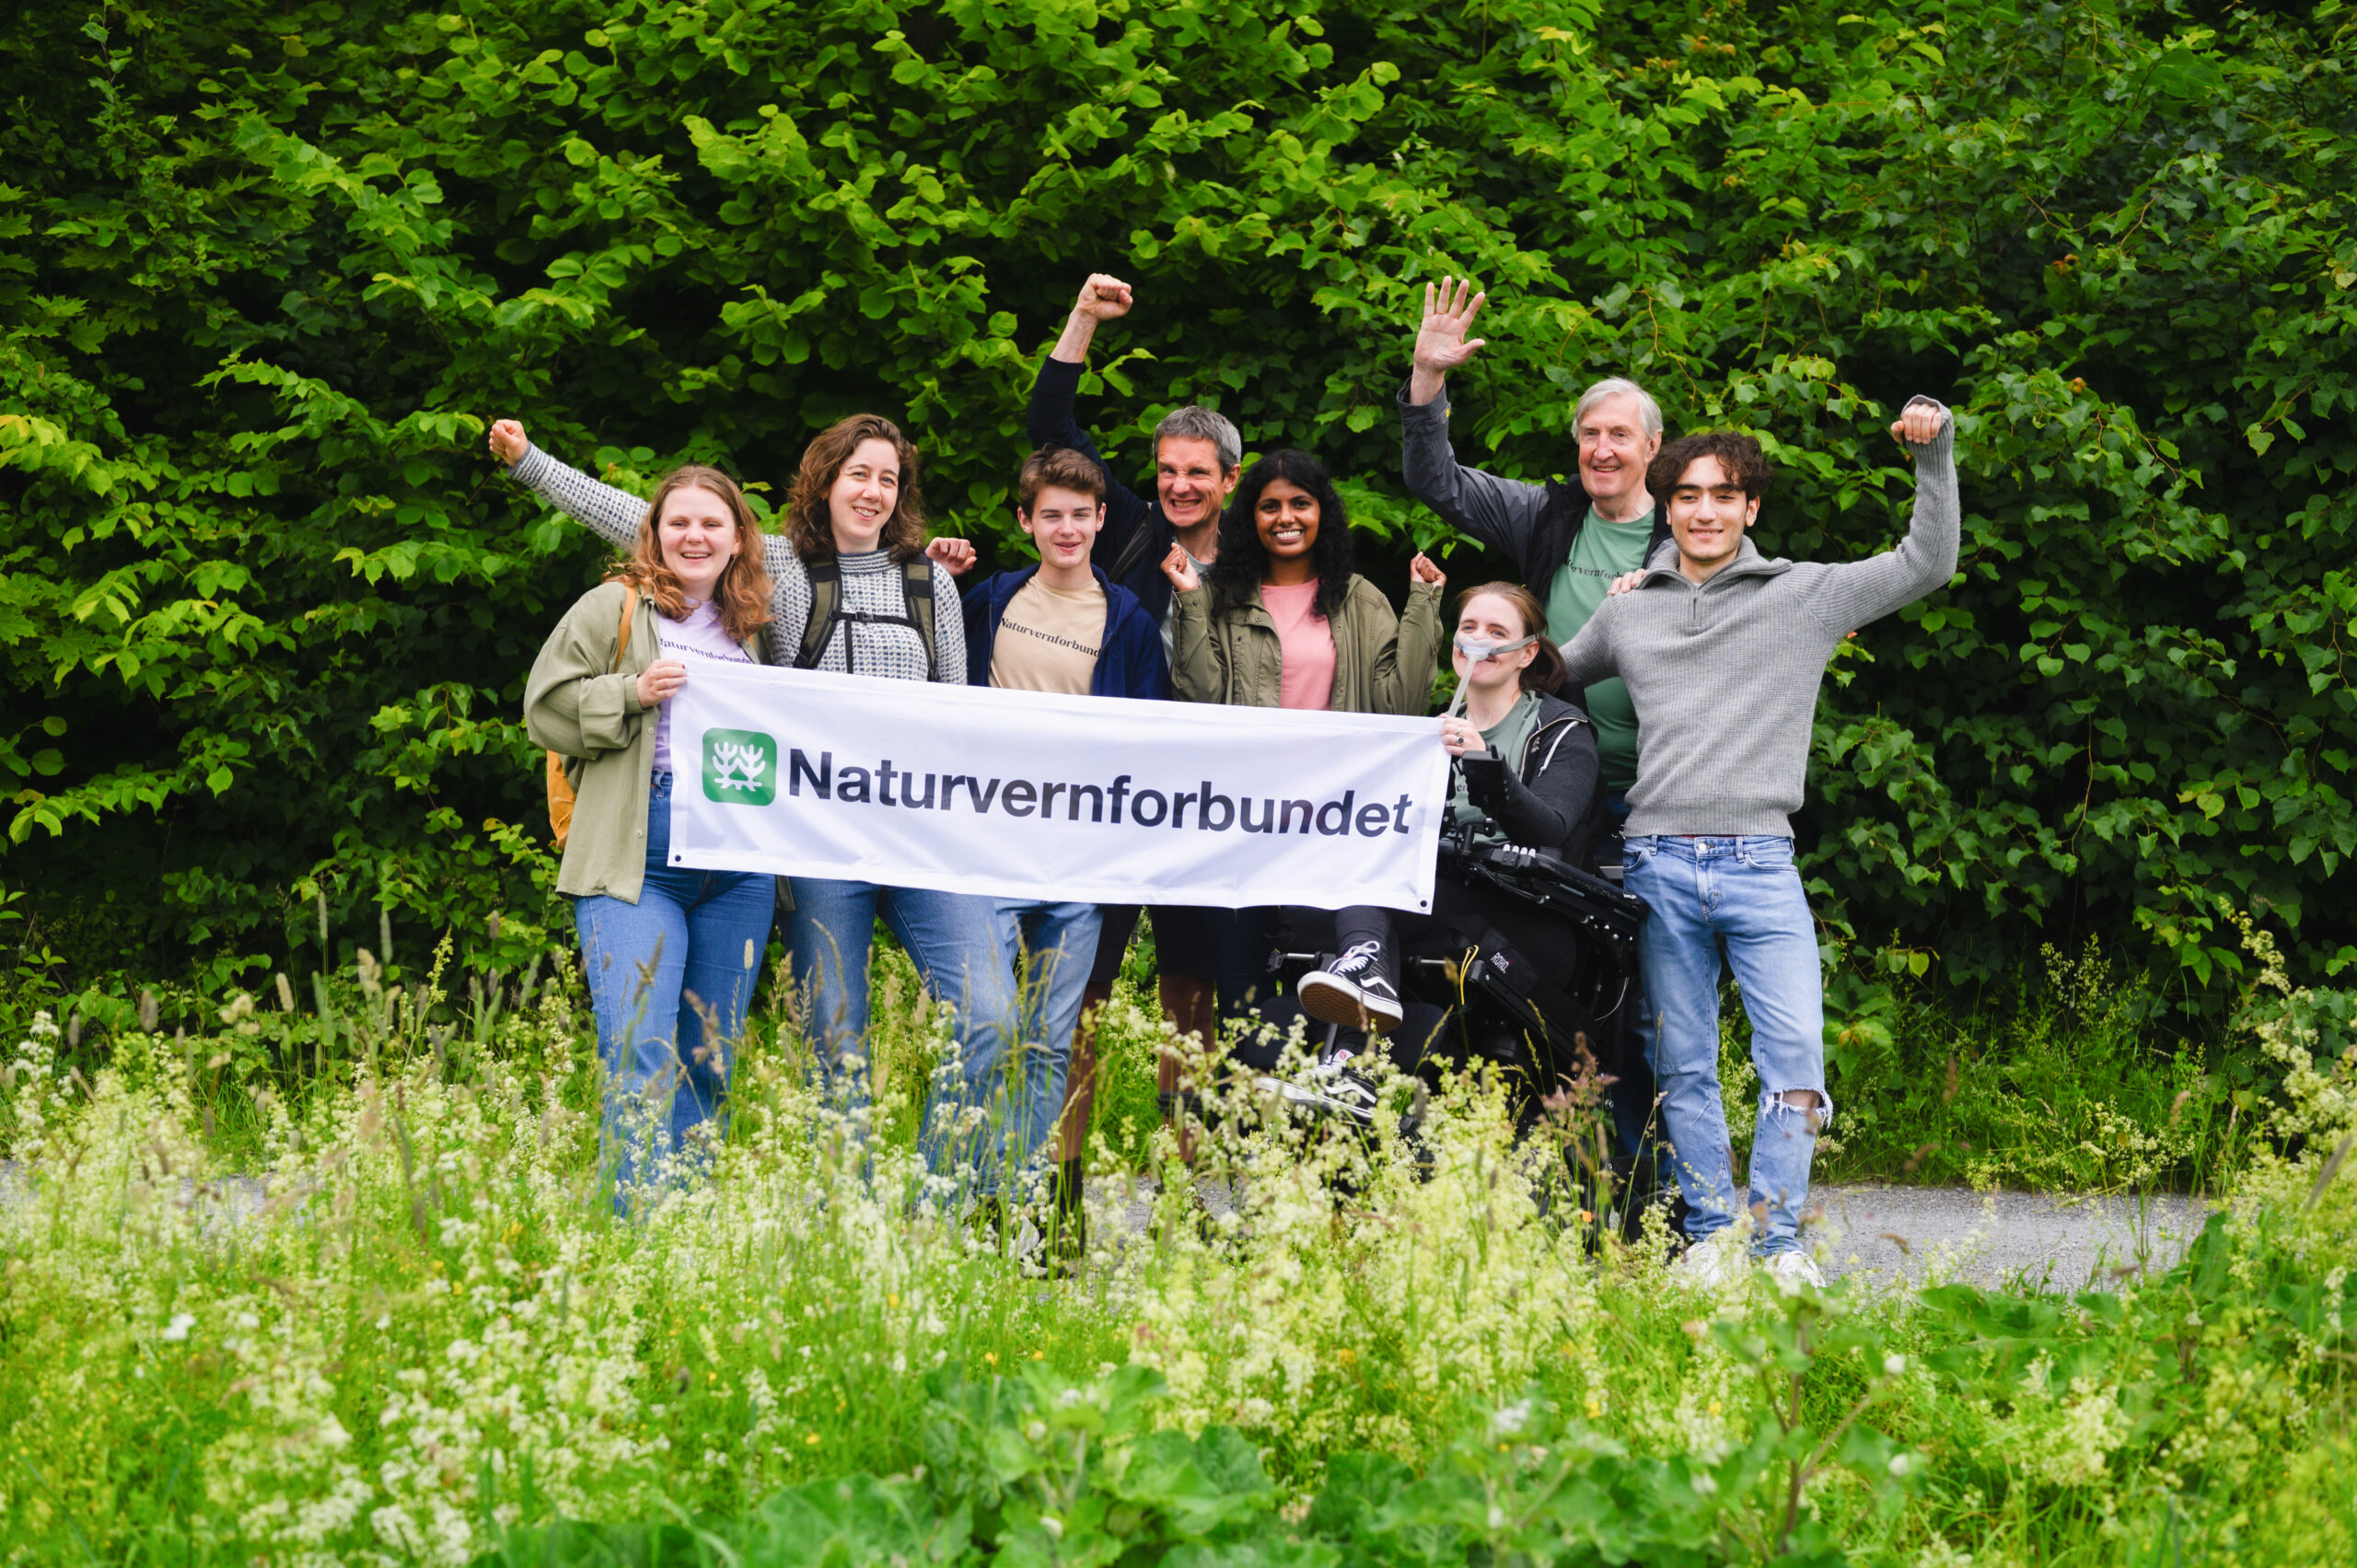 Lederen av Naturvernforbundet Truls Gulowsen og andre jubler for Naturvernforbundet